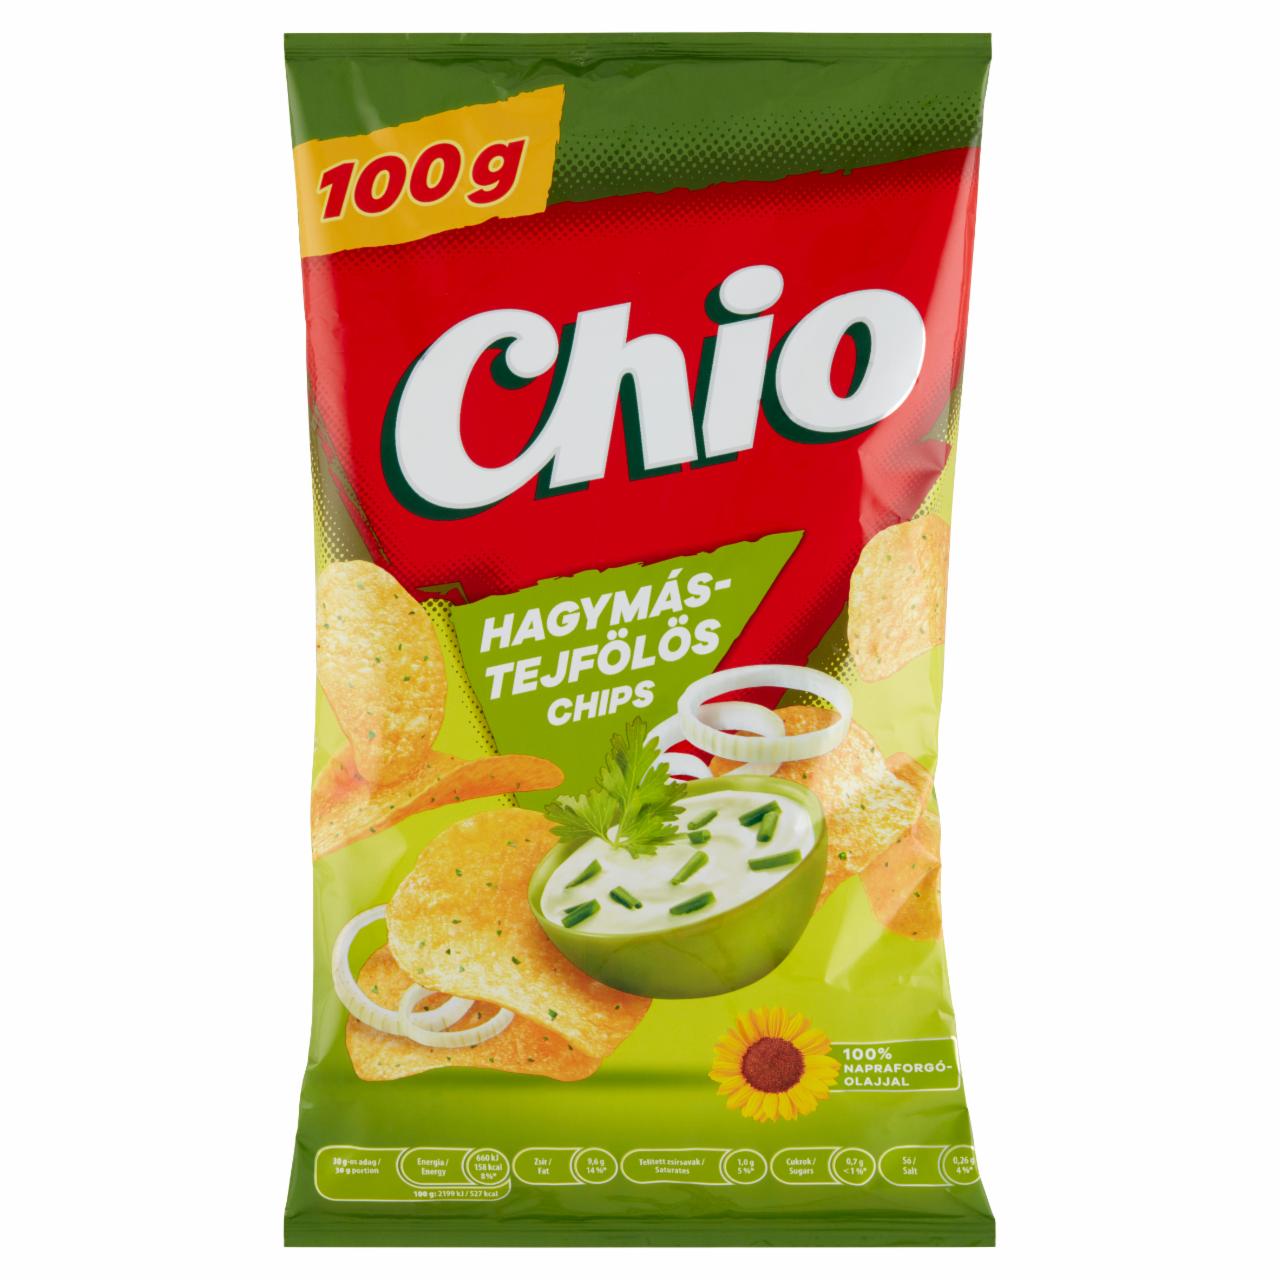 Képek - Chio hagymás-tejfölös chips 100 g